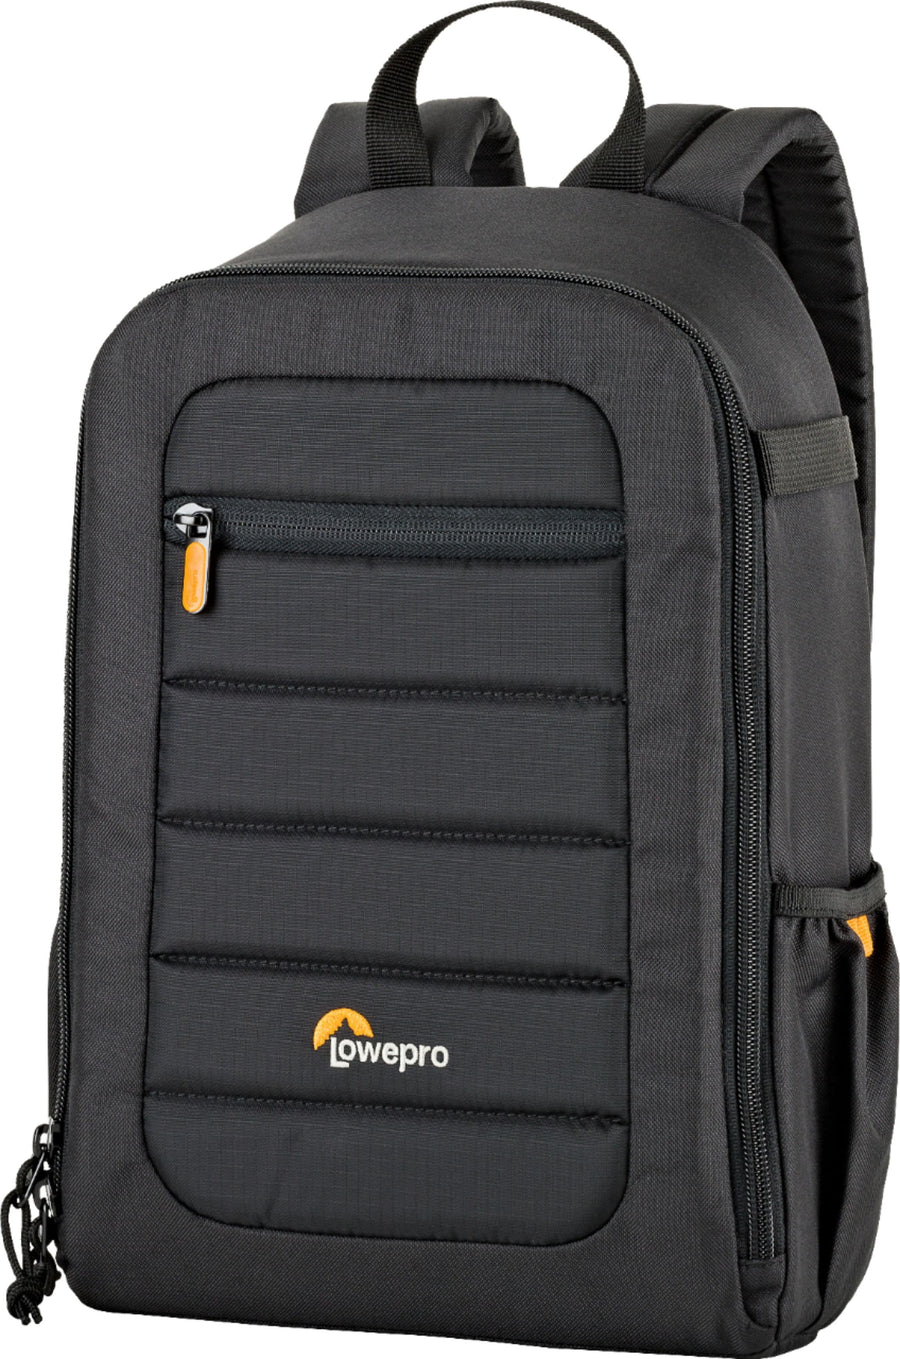 Lowepro - Tahoe Camera Backpack - Black_0